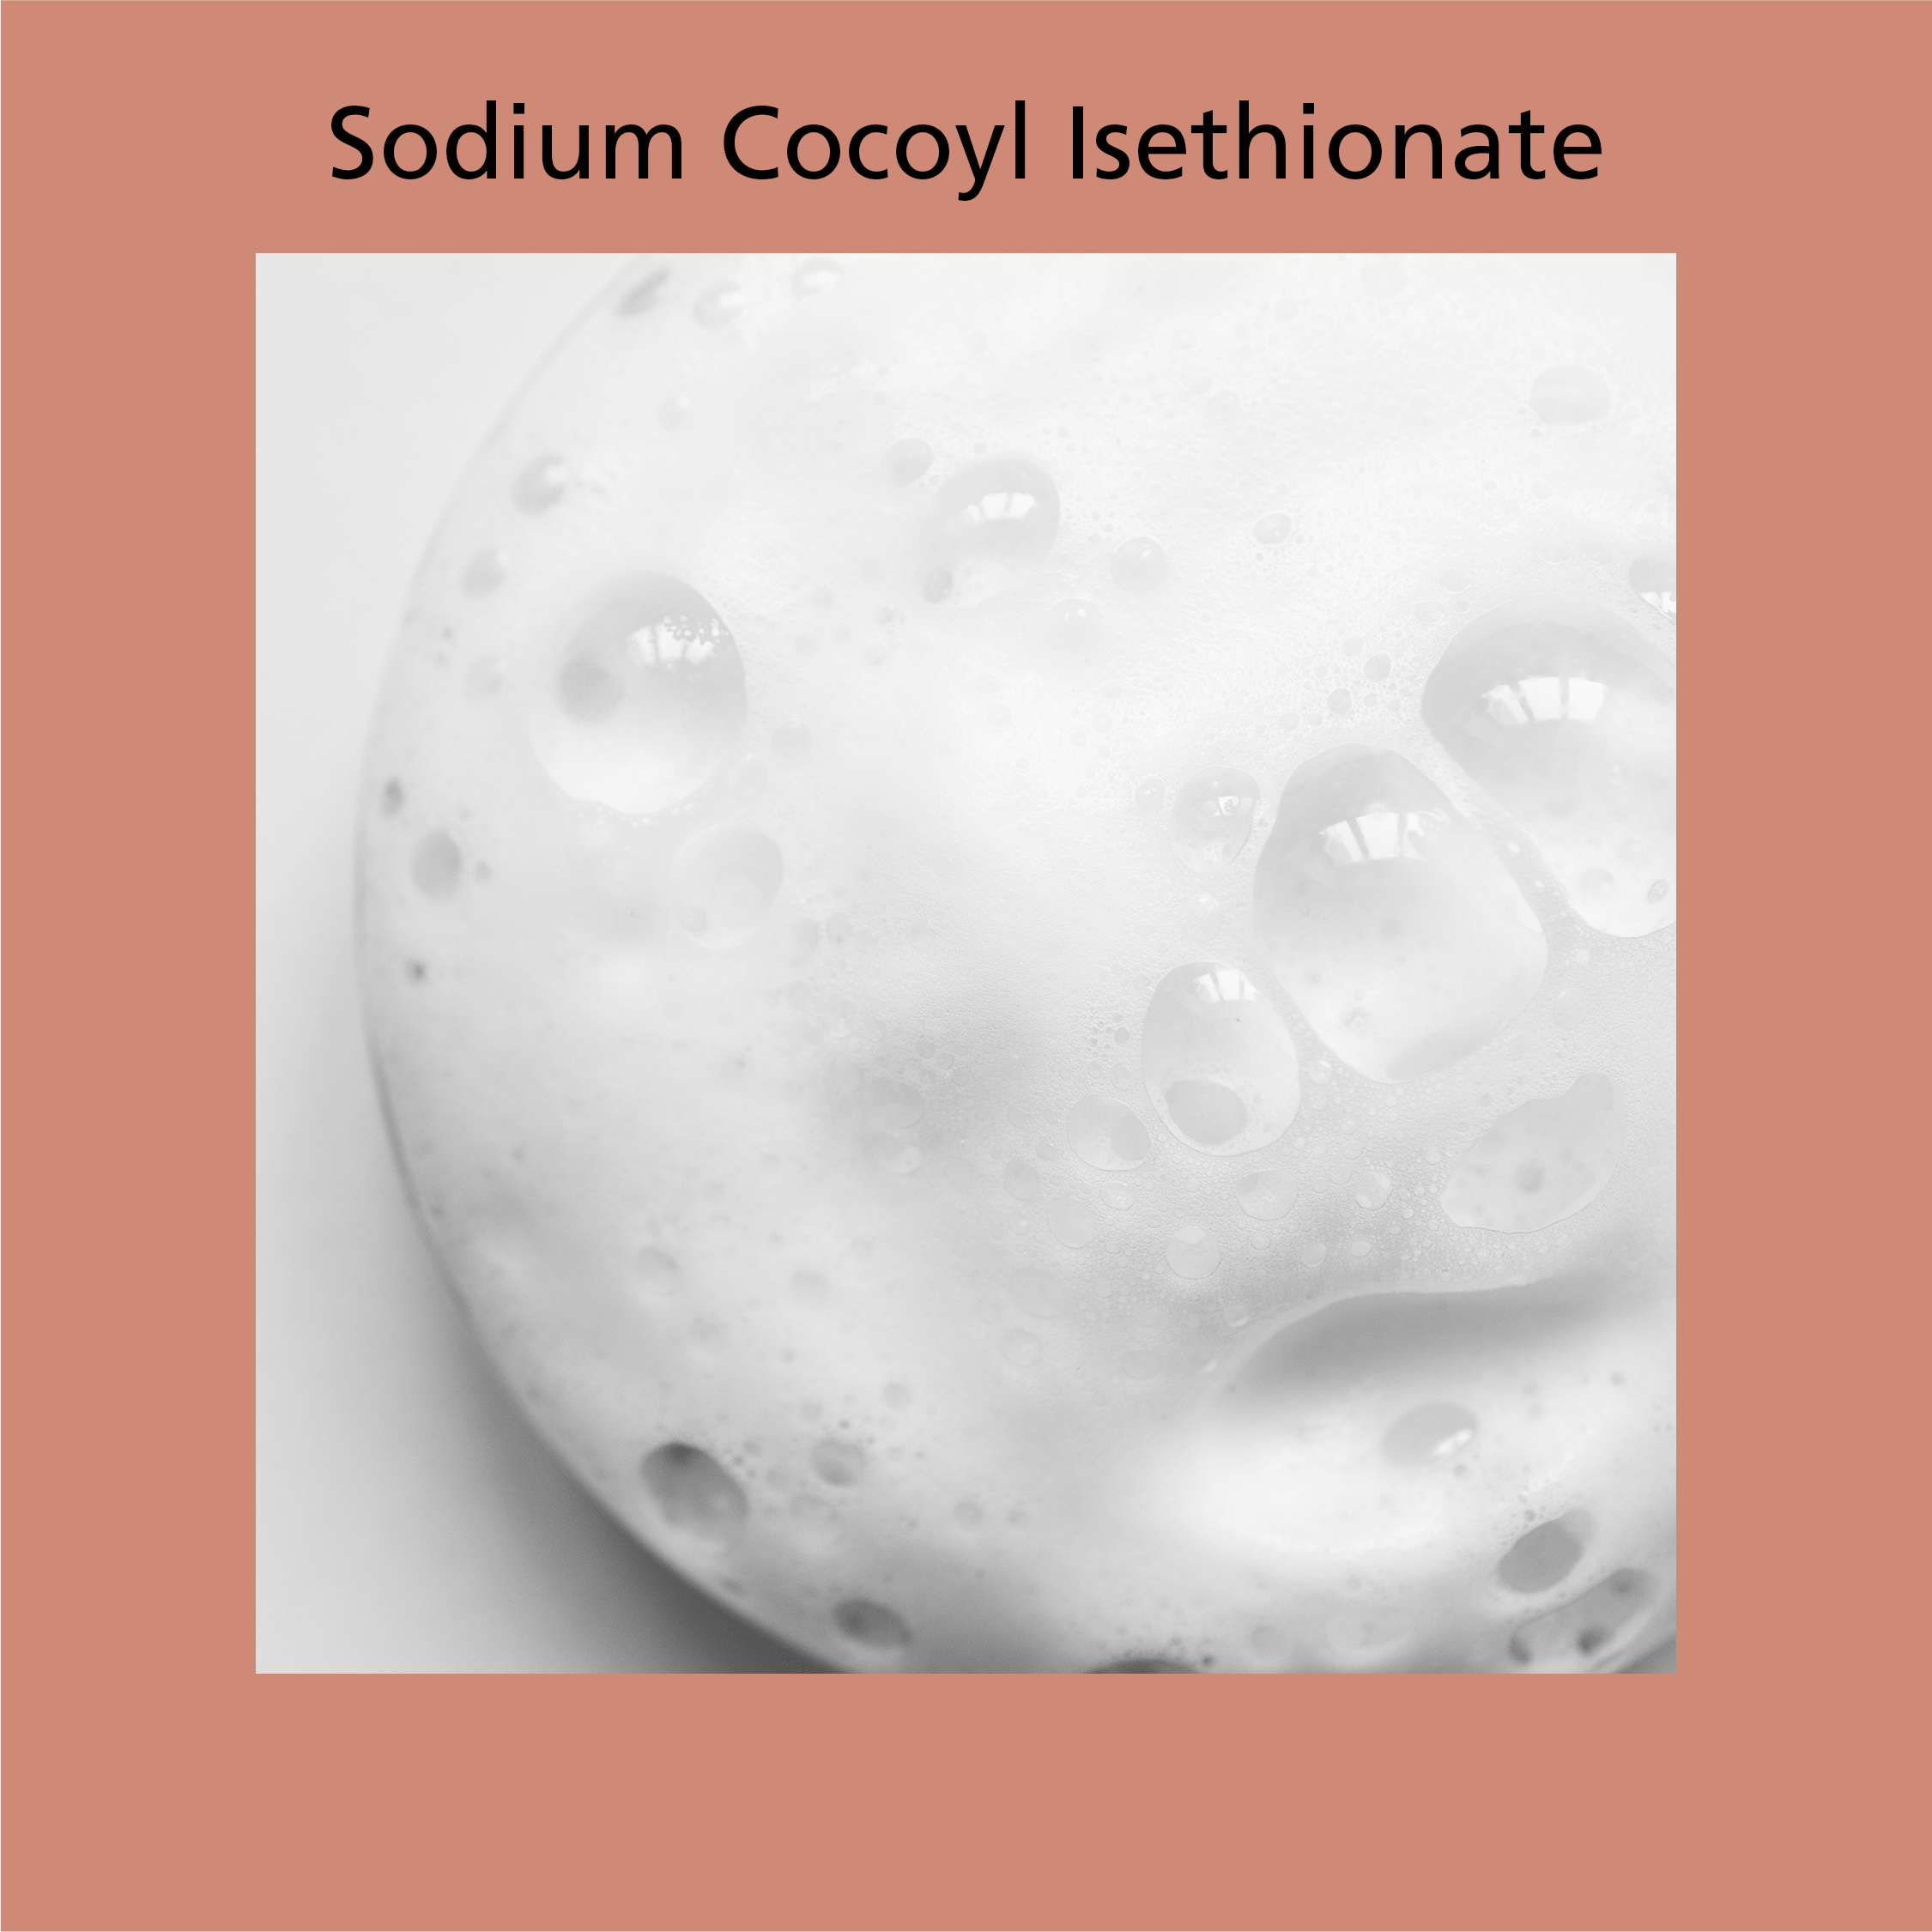 Sodium Cocyol